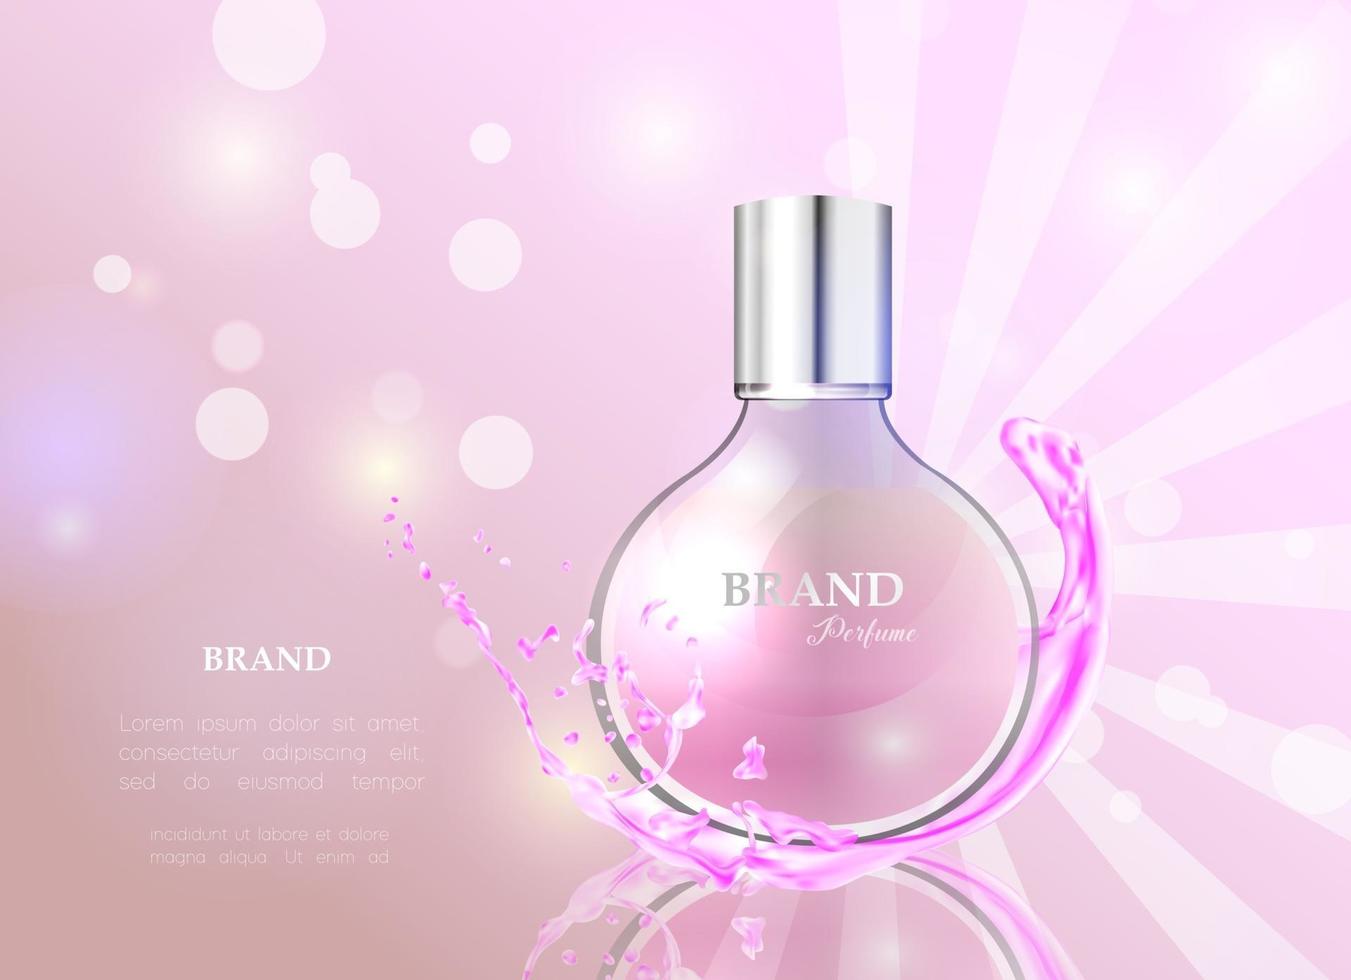 illustration vectorielle d'un parfum de style réaliste dans une bouteille en verre. superbe affiche publicitaire pour promouvoir un nouveau parfum. vecteur